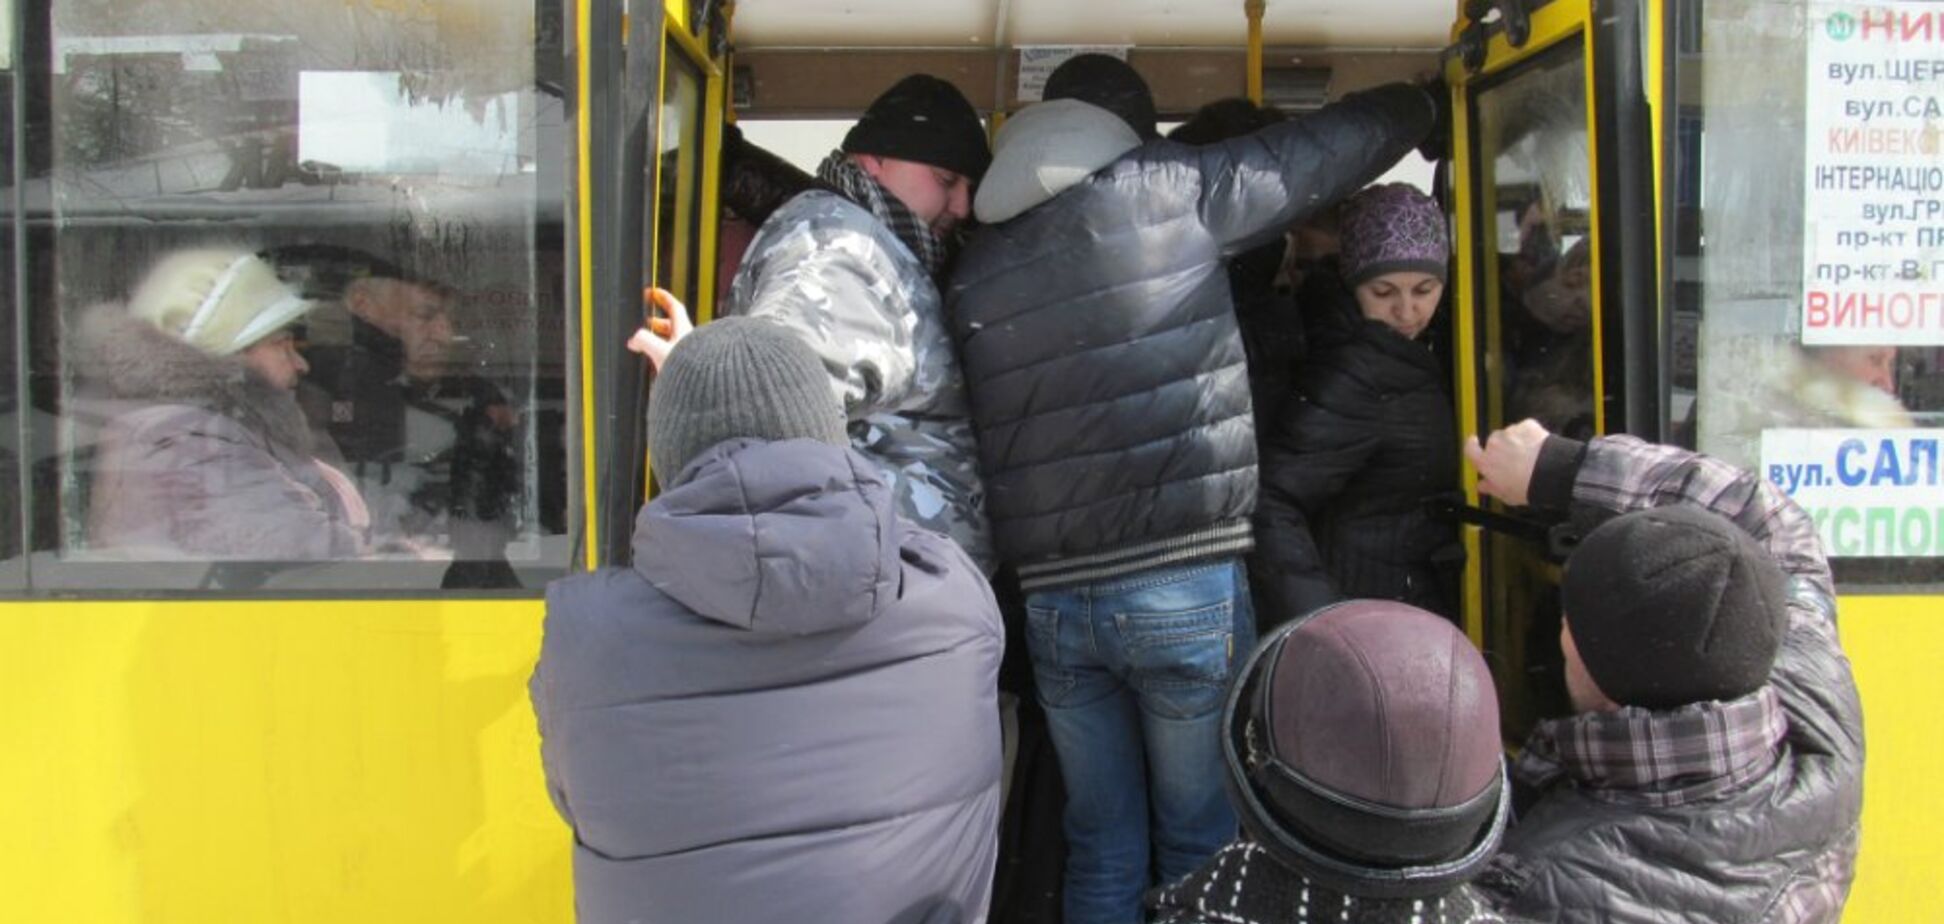 'Вас перевешать надо!' Сеть возмутил инцидент в маршрутке Киева